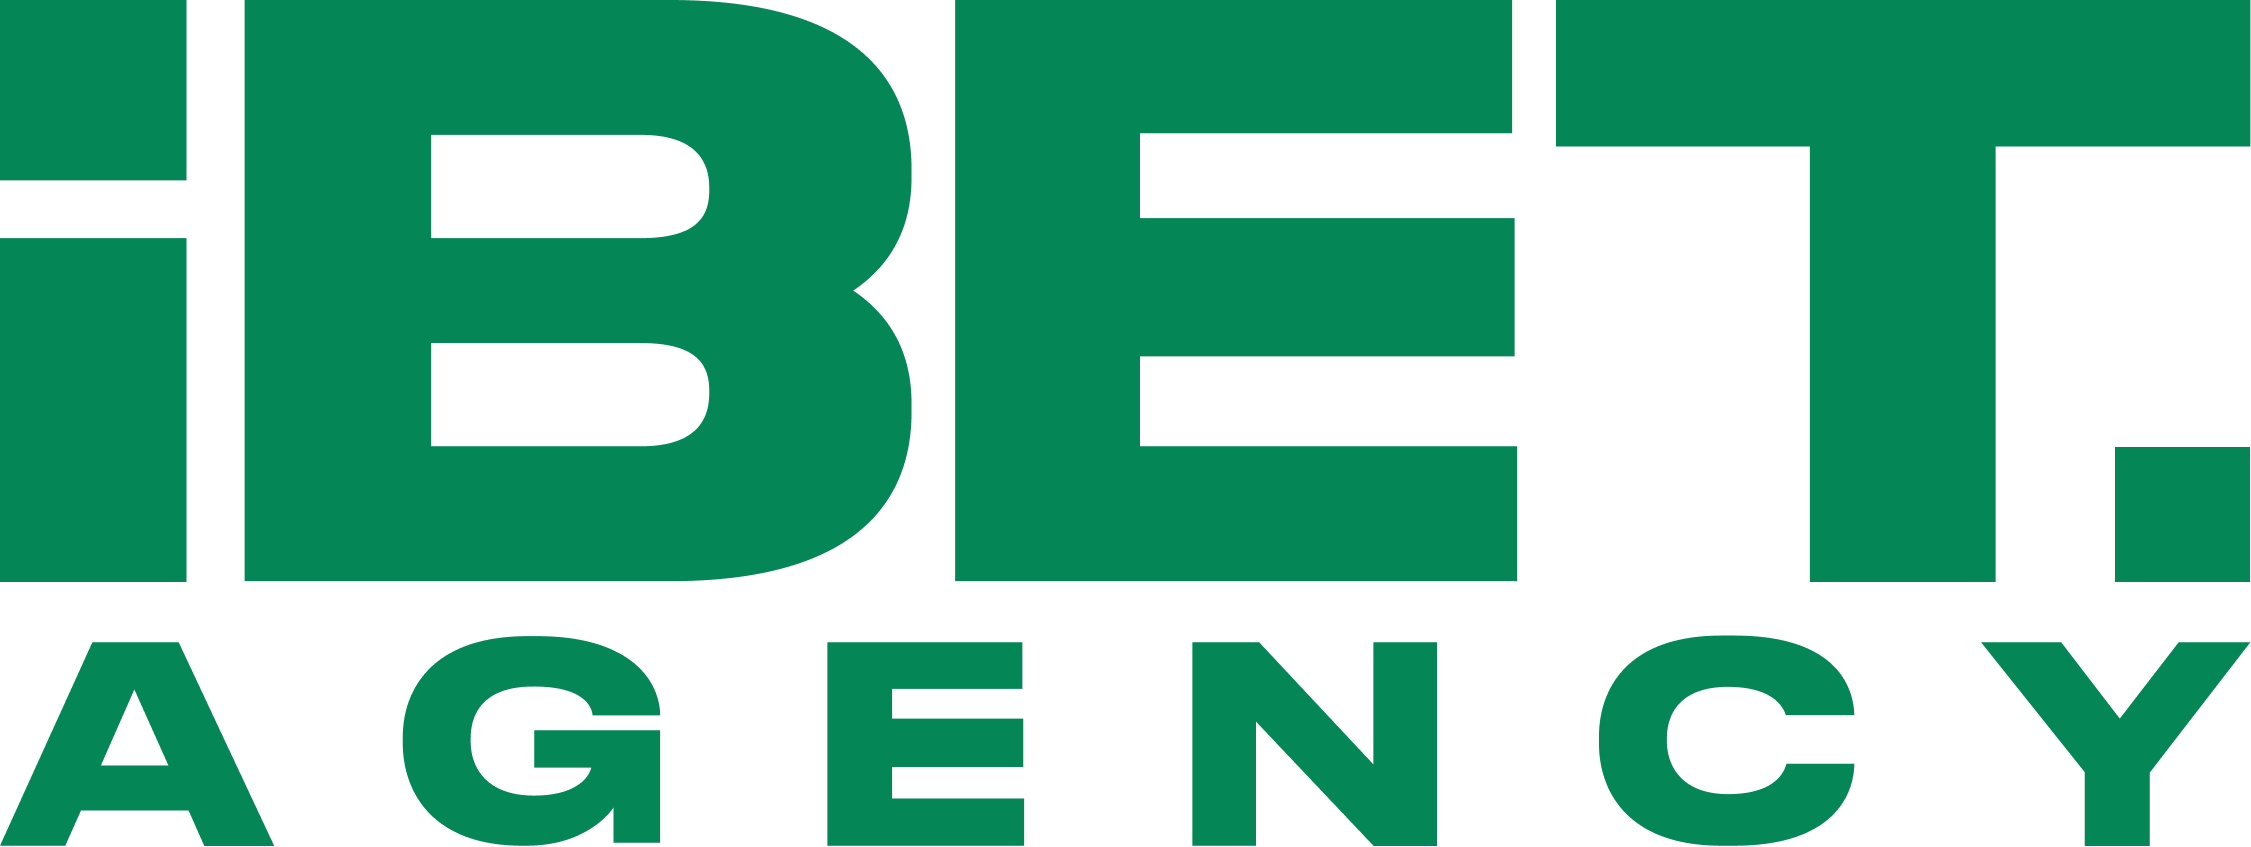 iBET AGENCY - Company logo